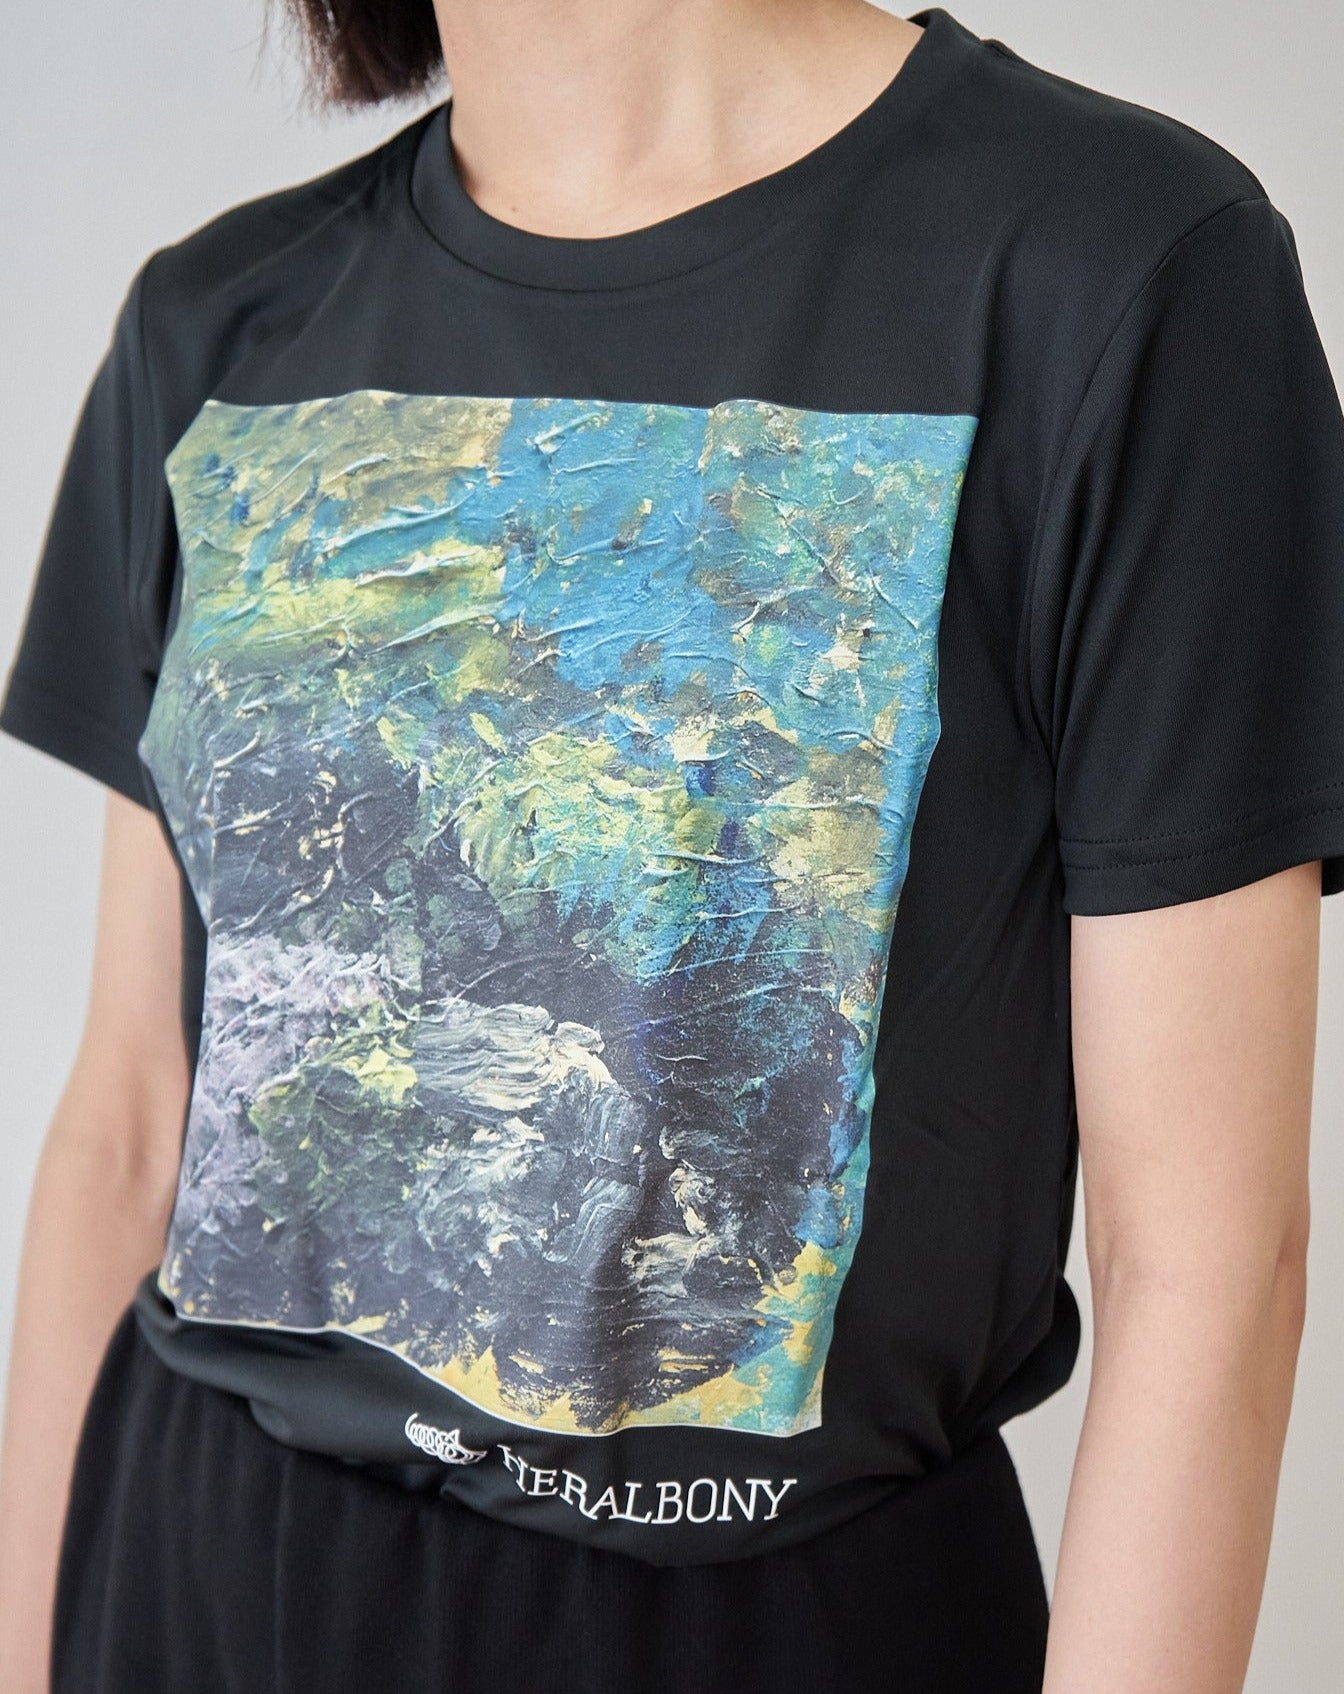 【世界に一枚】絵画ArtistによるアクリルペイントTシャツ